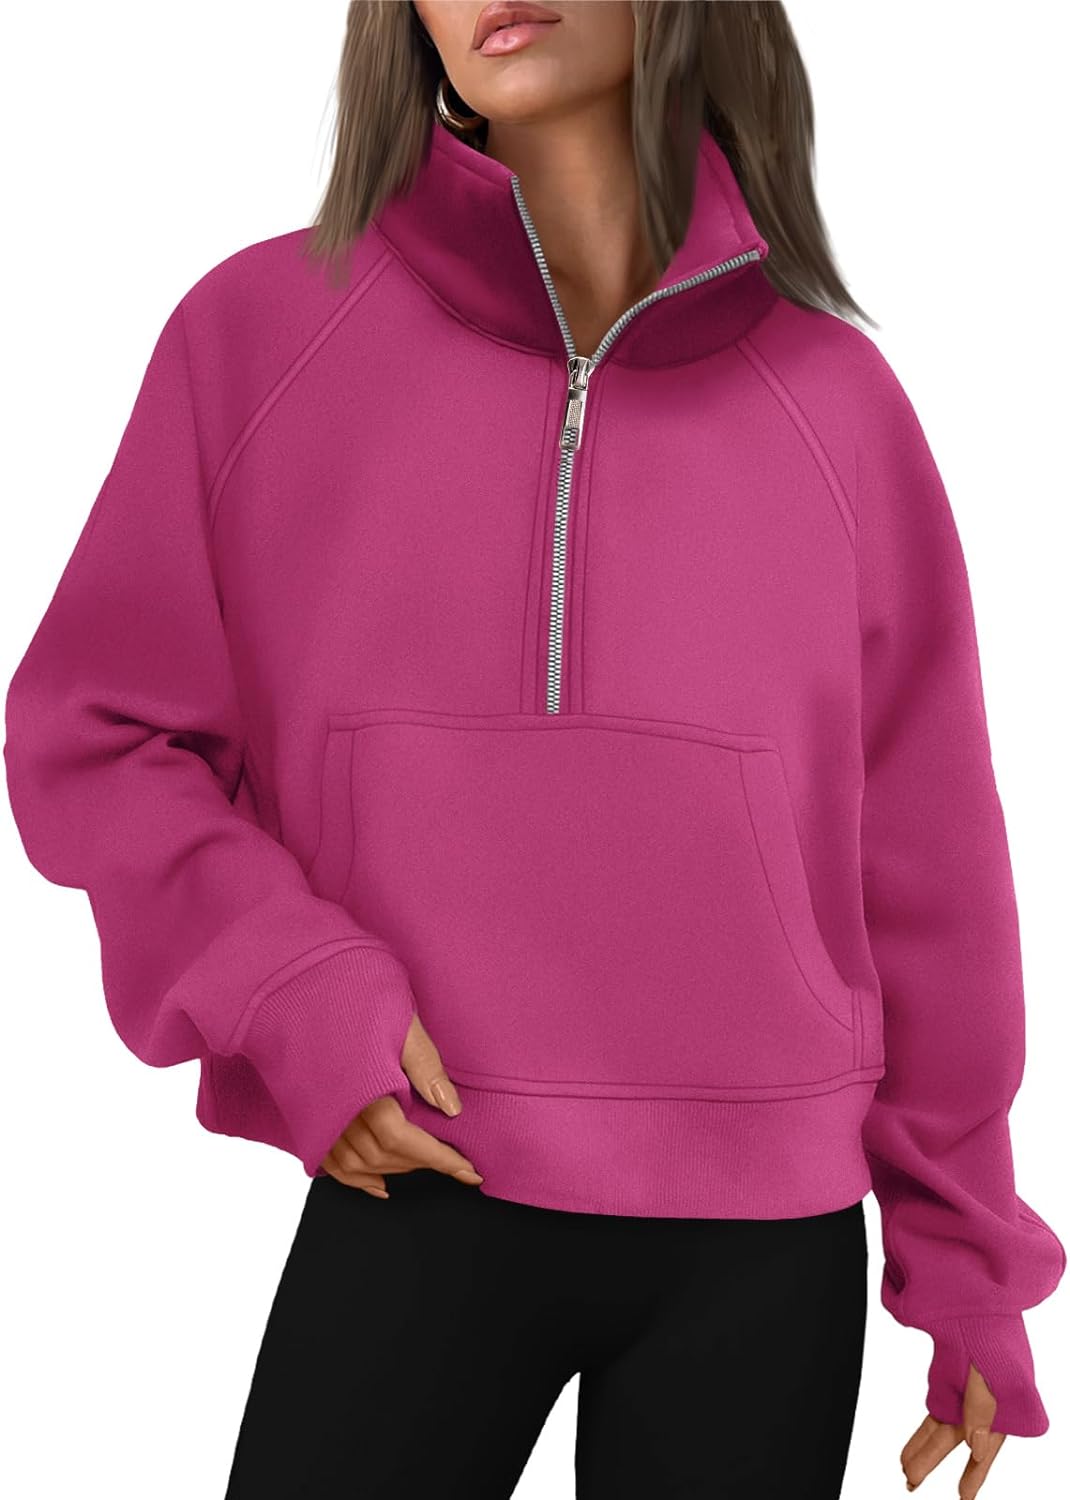 AUTOMET Womens Sweatshirts Half Zip Cropped Pullover Fleece